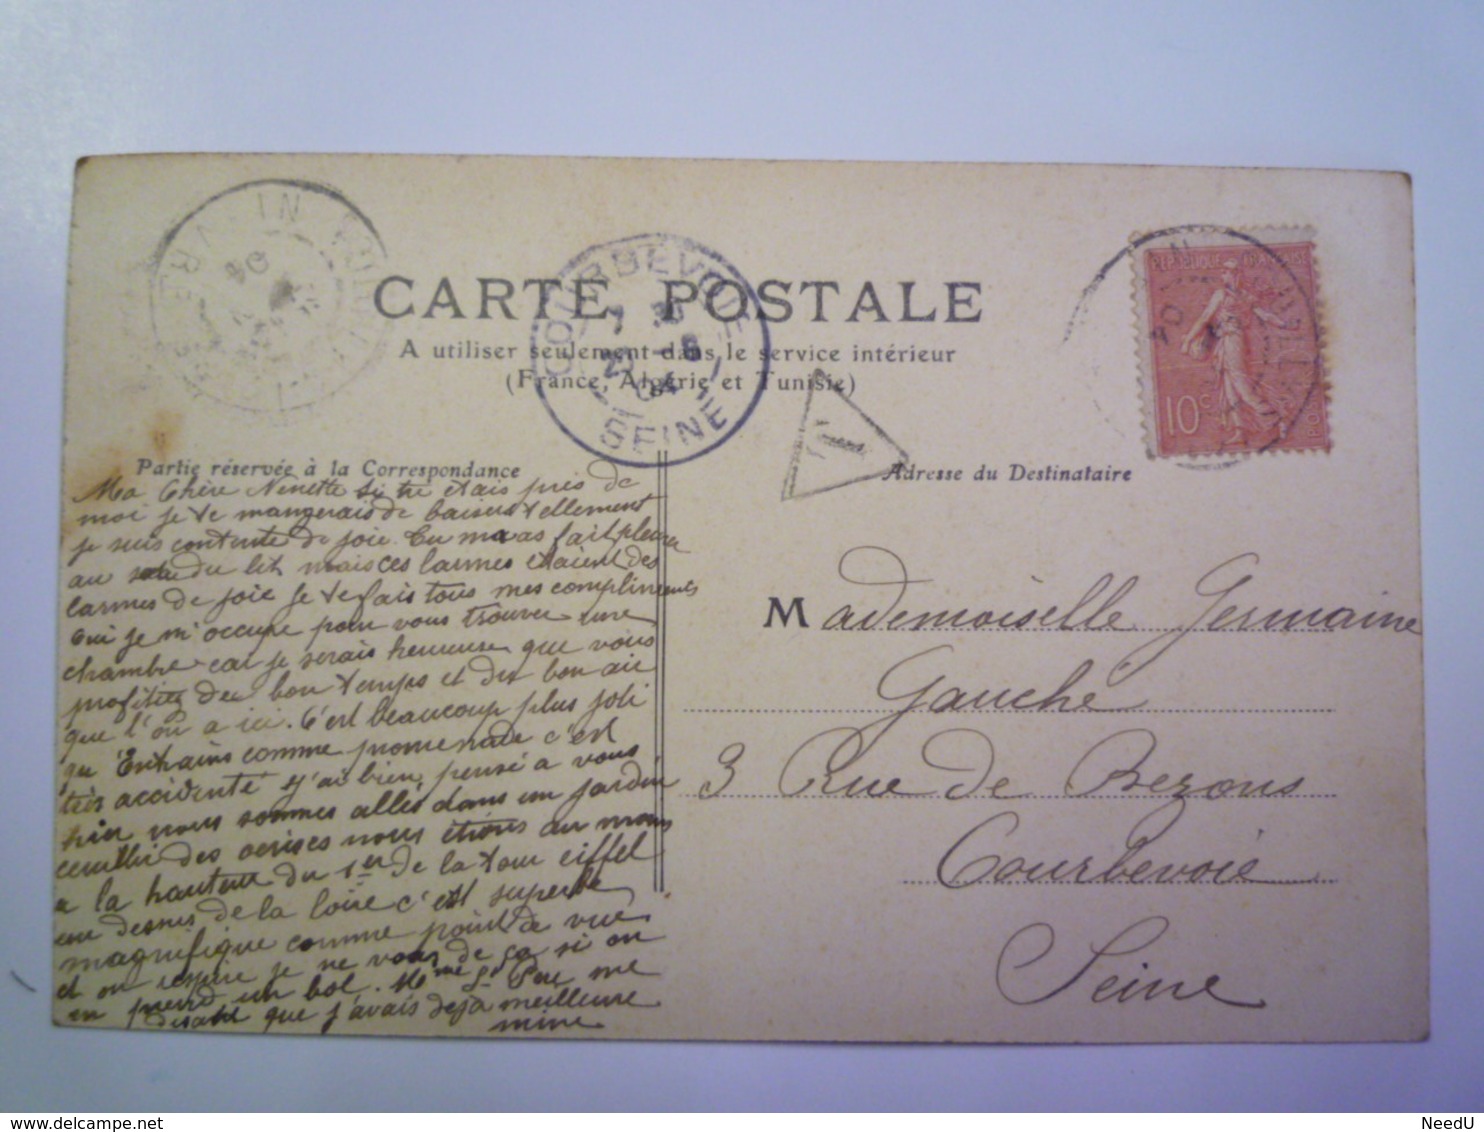 GP 2019 - 307  POUILLY-sur-LOIRE  (Nièvre)  :  Vue Générale  (Ouest)   1904   XXX - Pouilly Sur Loire